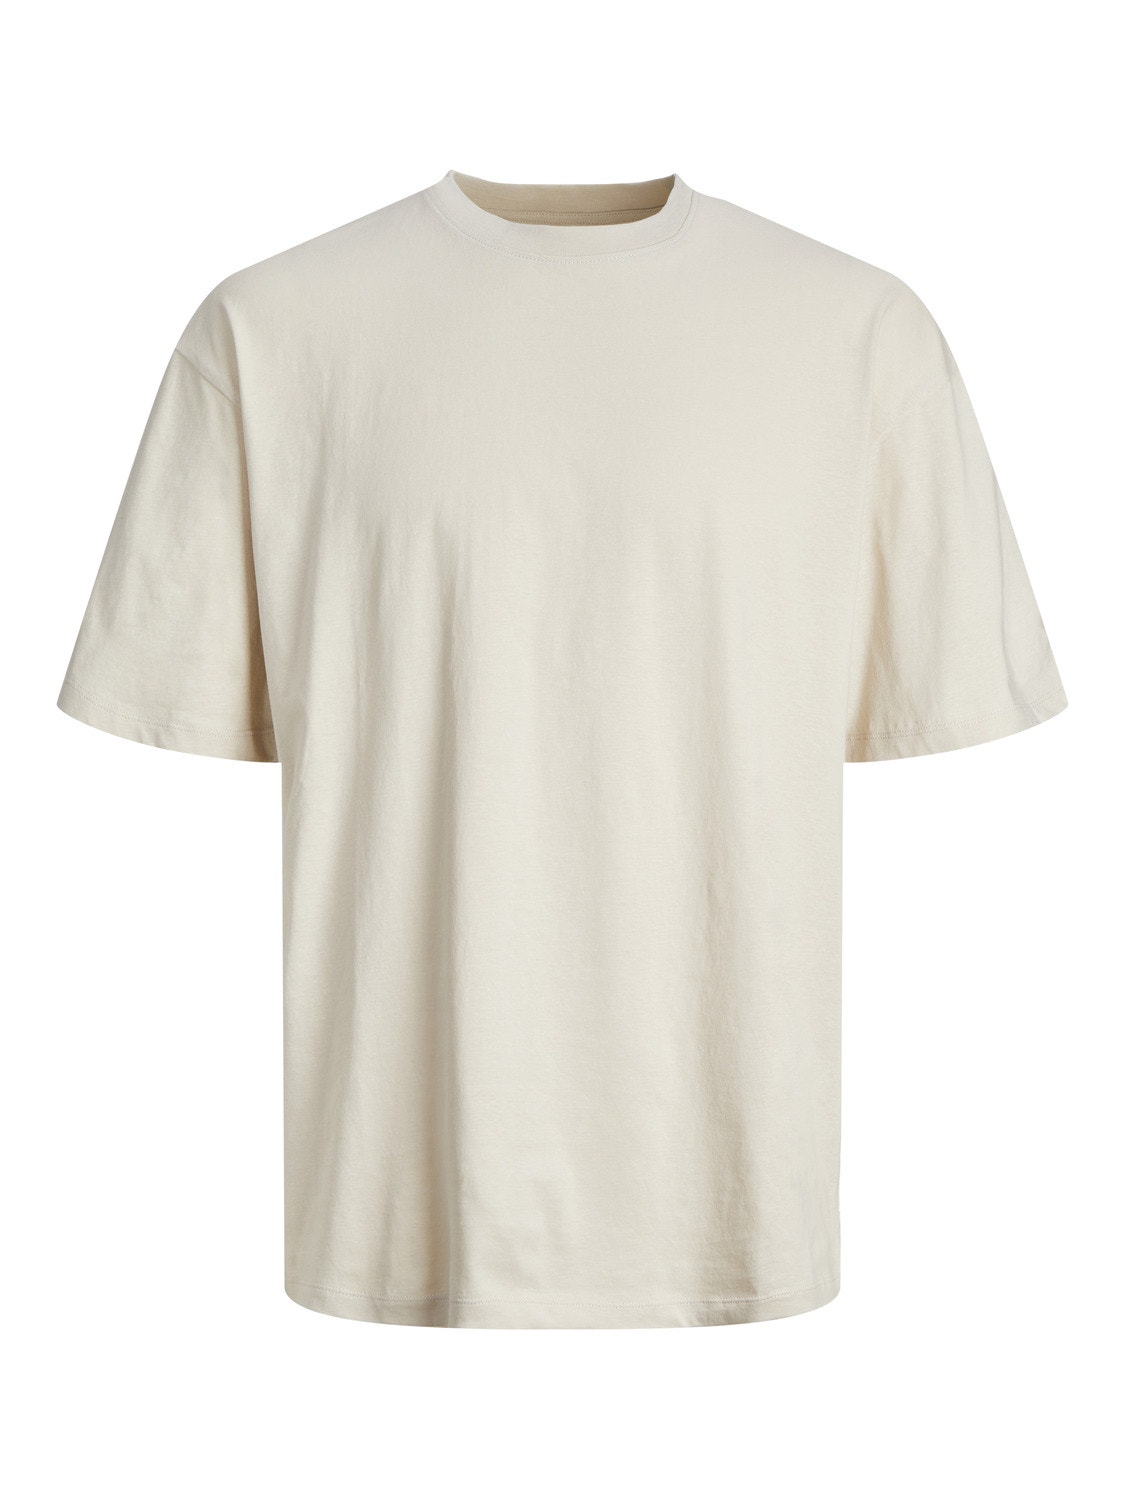 Jack & Jones T-shirt Liso Decote Redondo -Moonbeam - 12249319